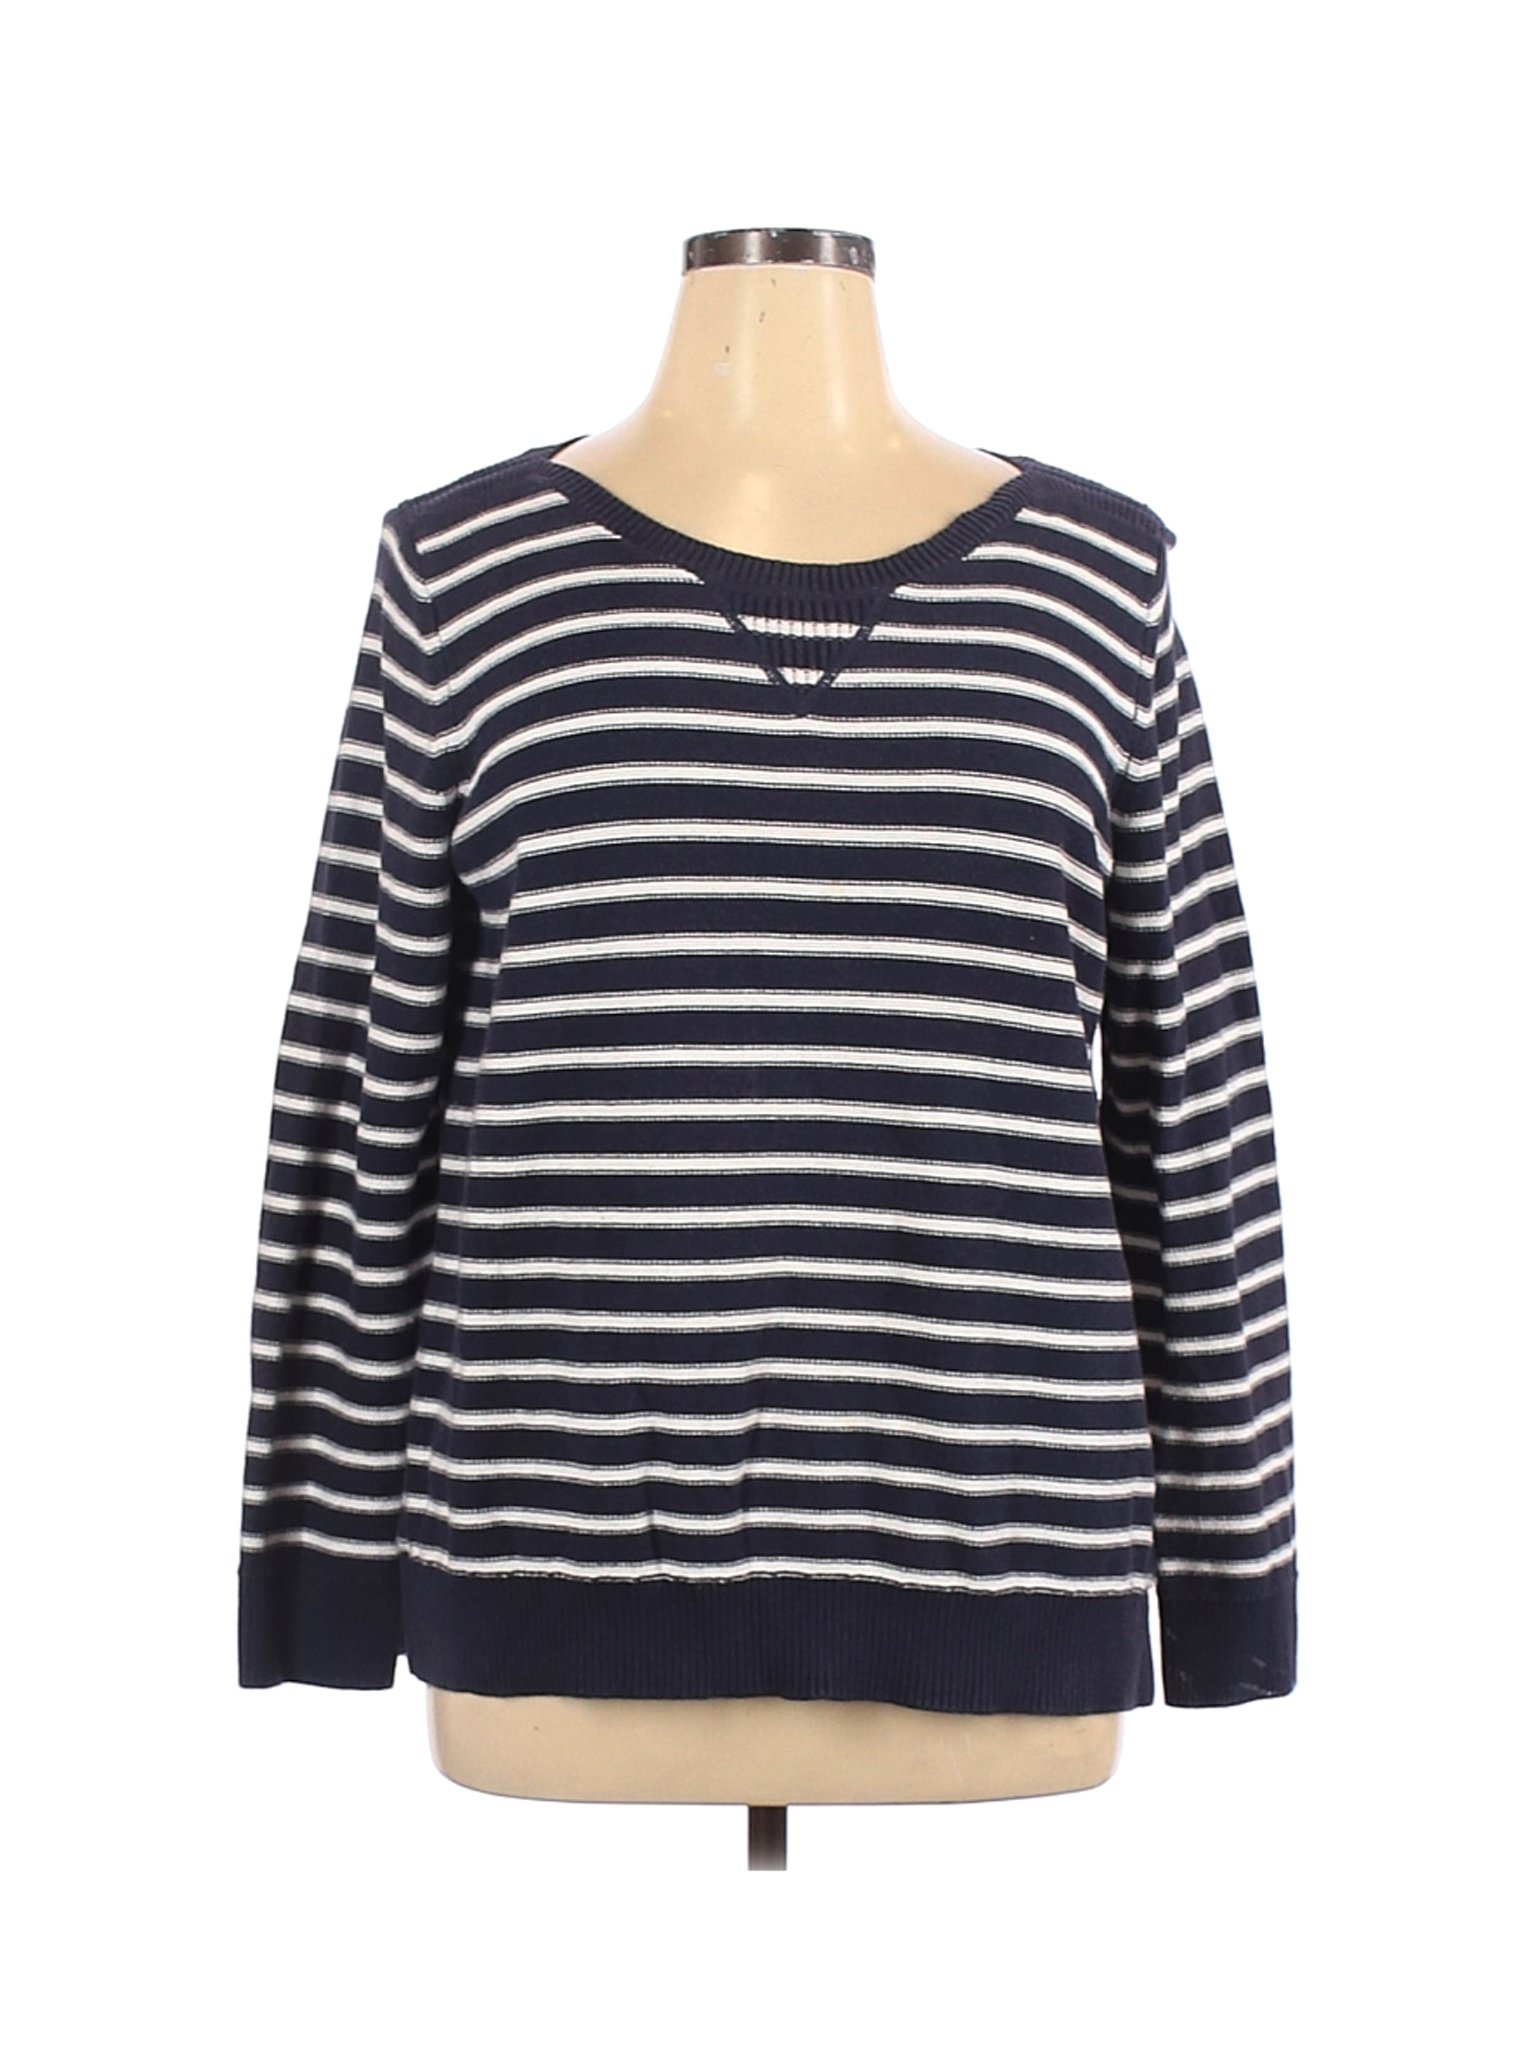 Liz Claiborne Women Blue Pullover Sweater XL | eBay